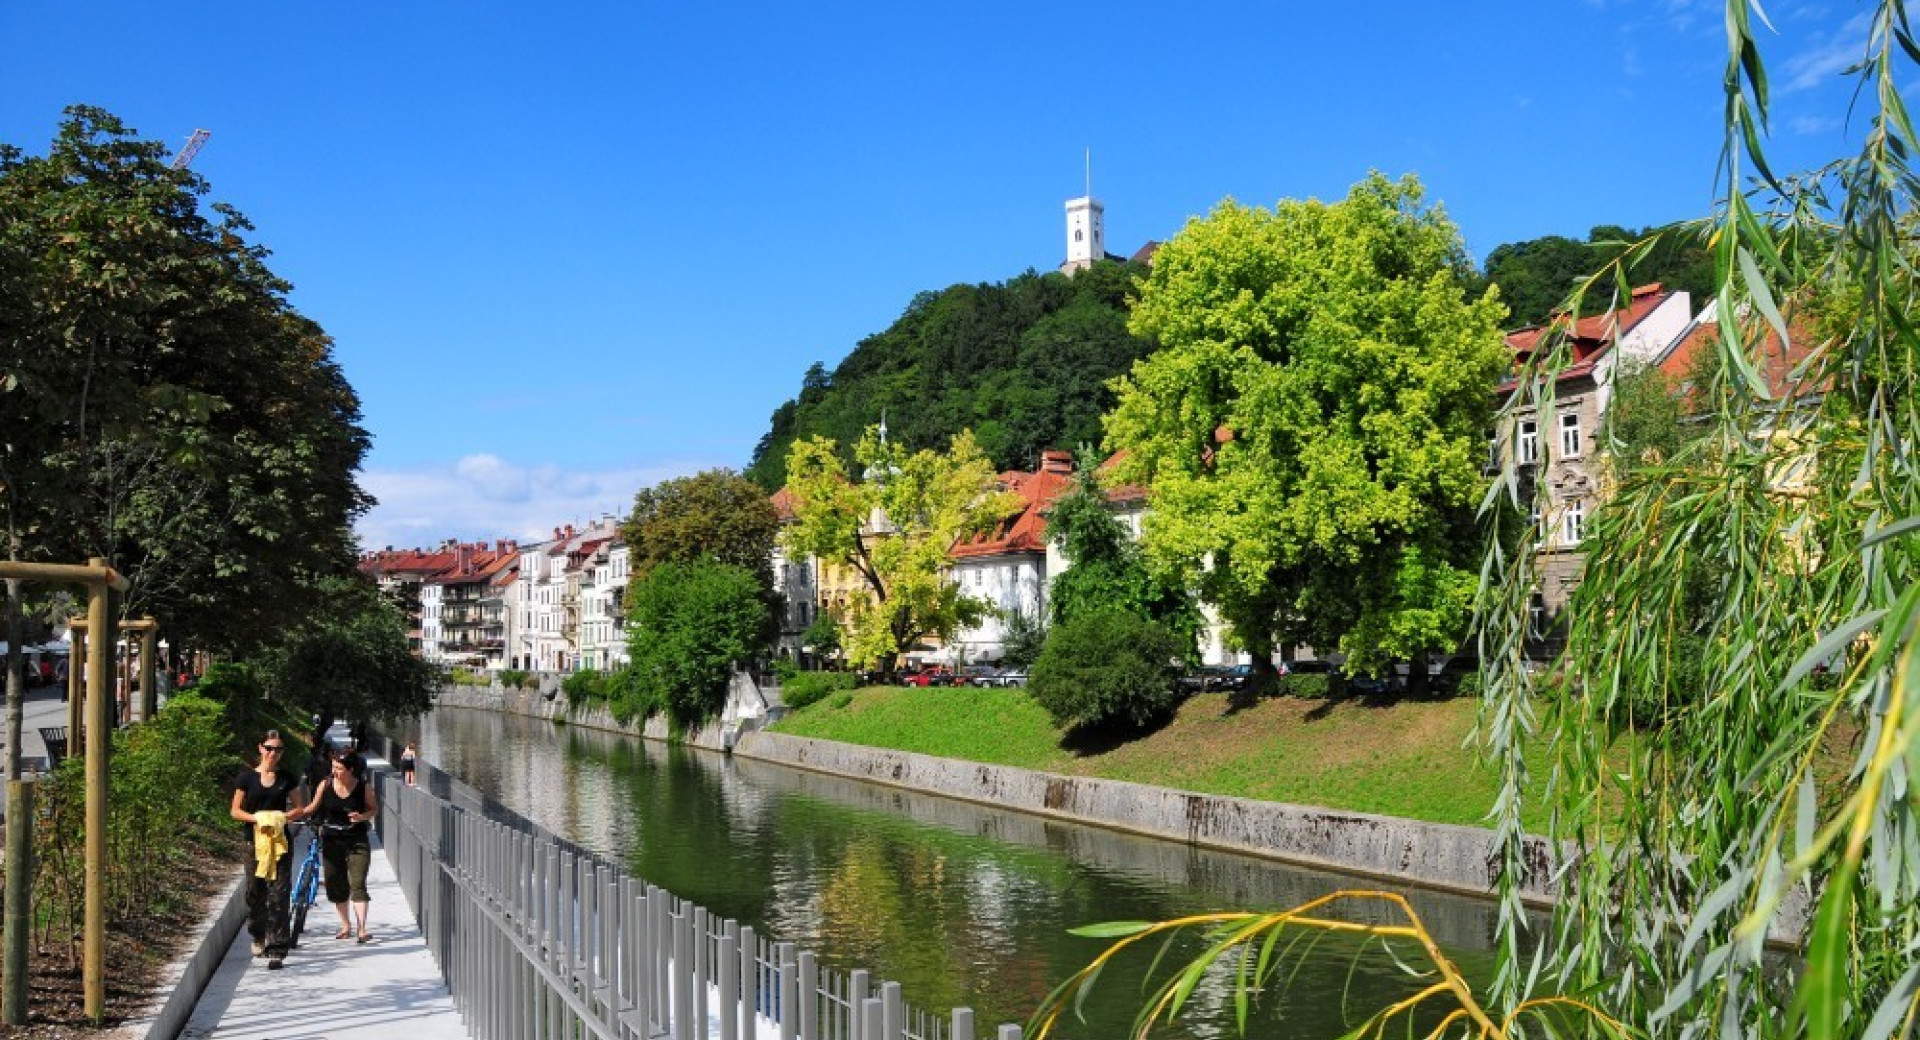 Sprehajalci ob Ljubljanici. V ozadju je Ljubljanski grad.